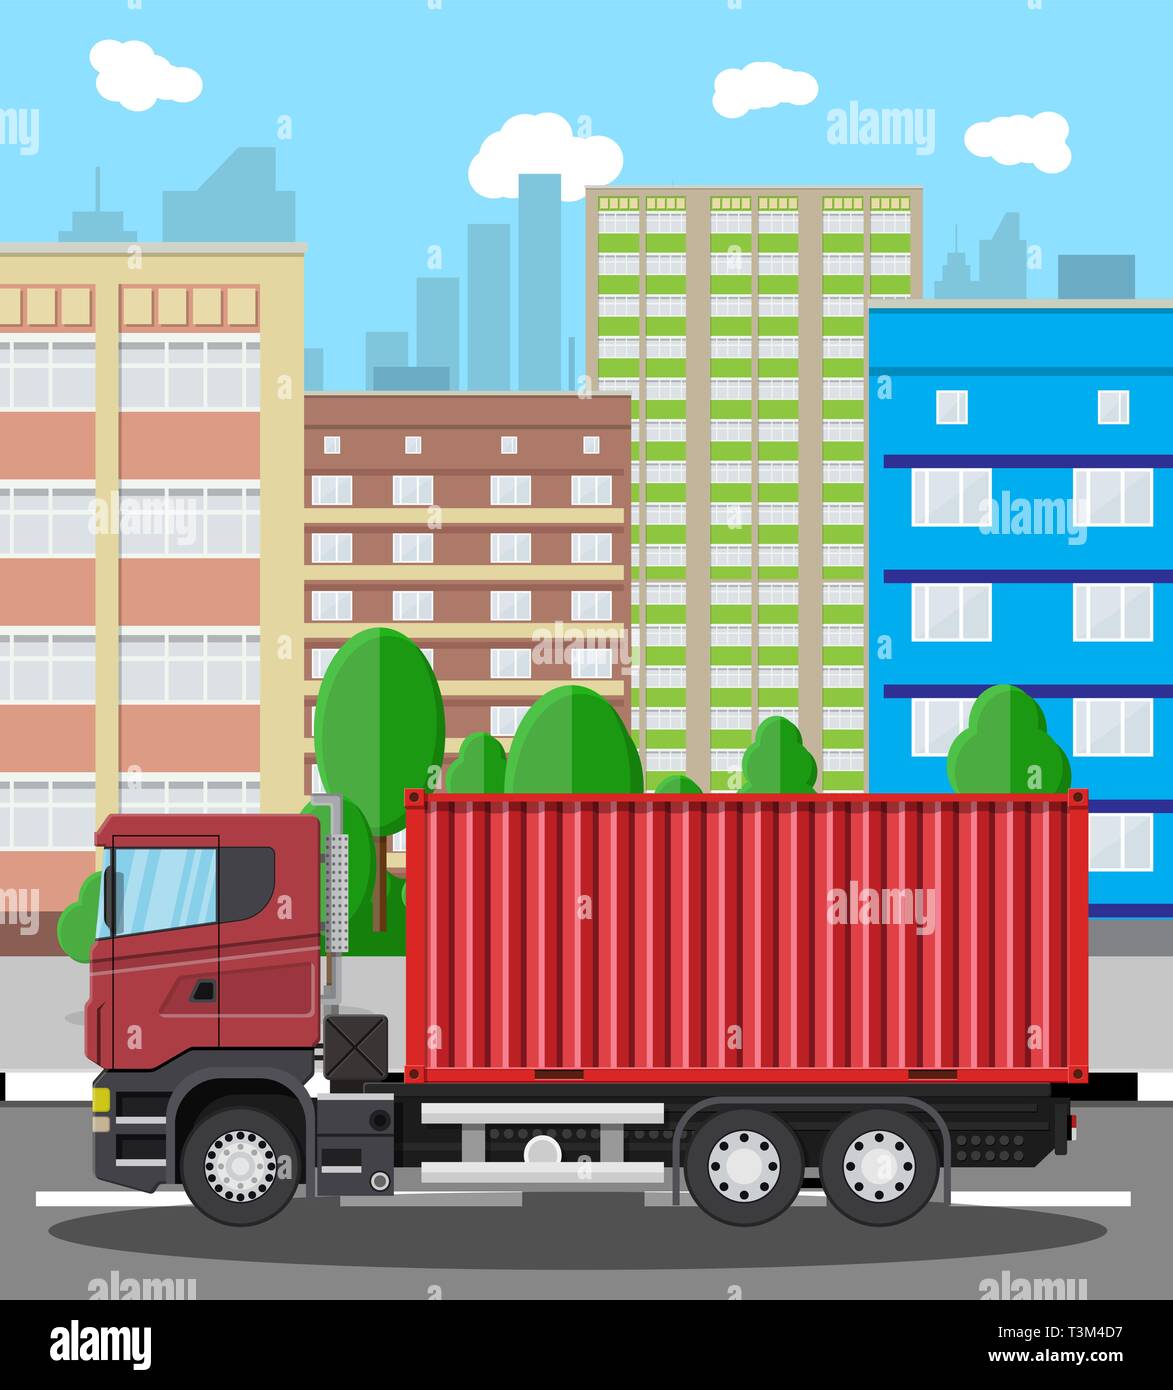 Cargo Lieferwagen mit einem Metallbehälter. Versand und Lieferung der Ware.  Wagen für den Transport. Anhänger in der Stadt. Stadtbild mit Bäumen,  Gebäude Stock-Vektorgrafik - Alamy